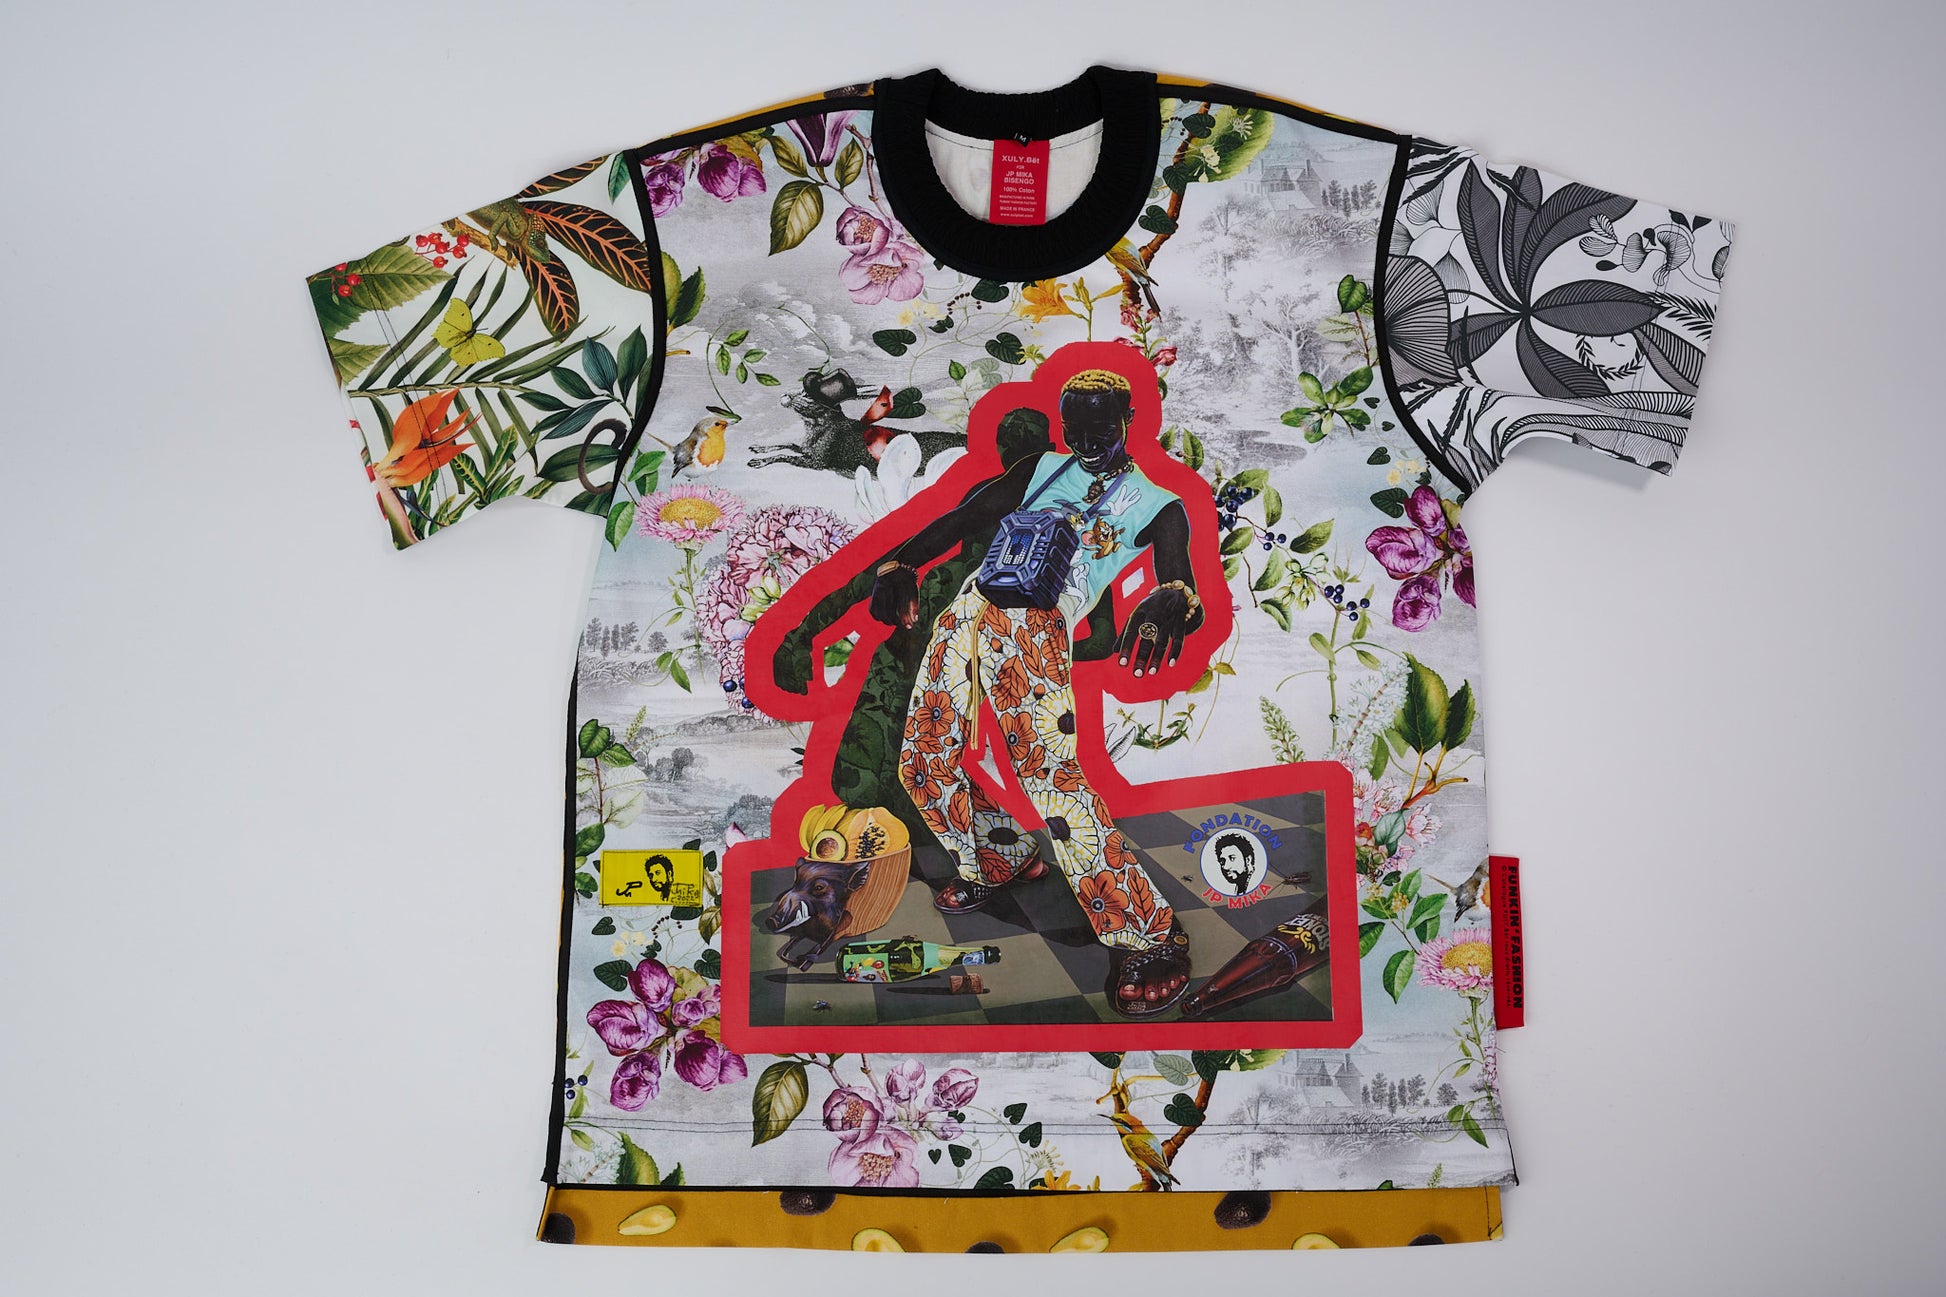 T-shirt BISENGO JP MIKA x XULY-BËT - Numéroté 9/65 - Taille M - Wearable-art inspiré du tableau "Feti n'a Feti" (C'est la fête) de la série de toiles BISENGO de JP MIKA.